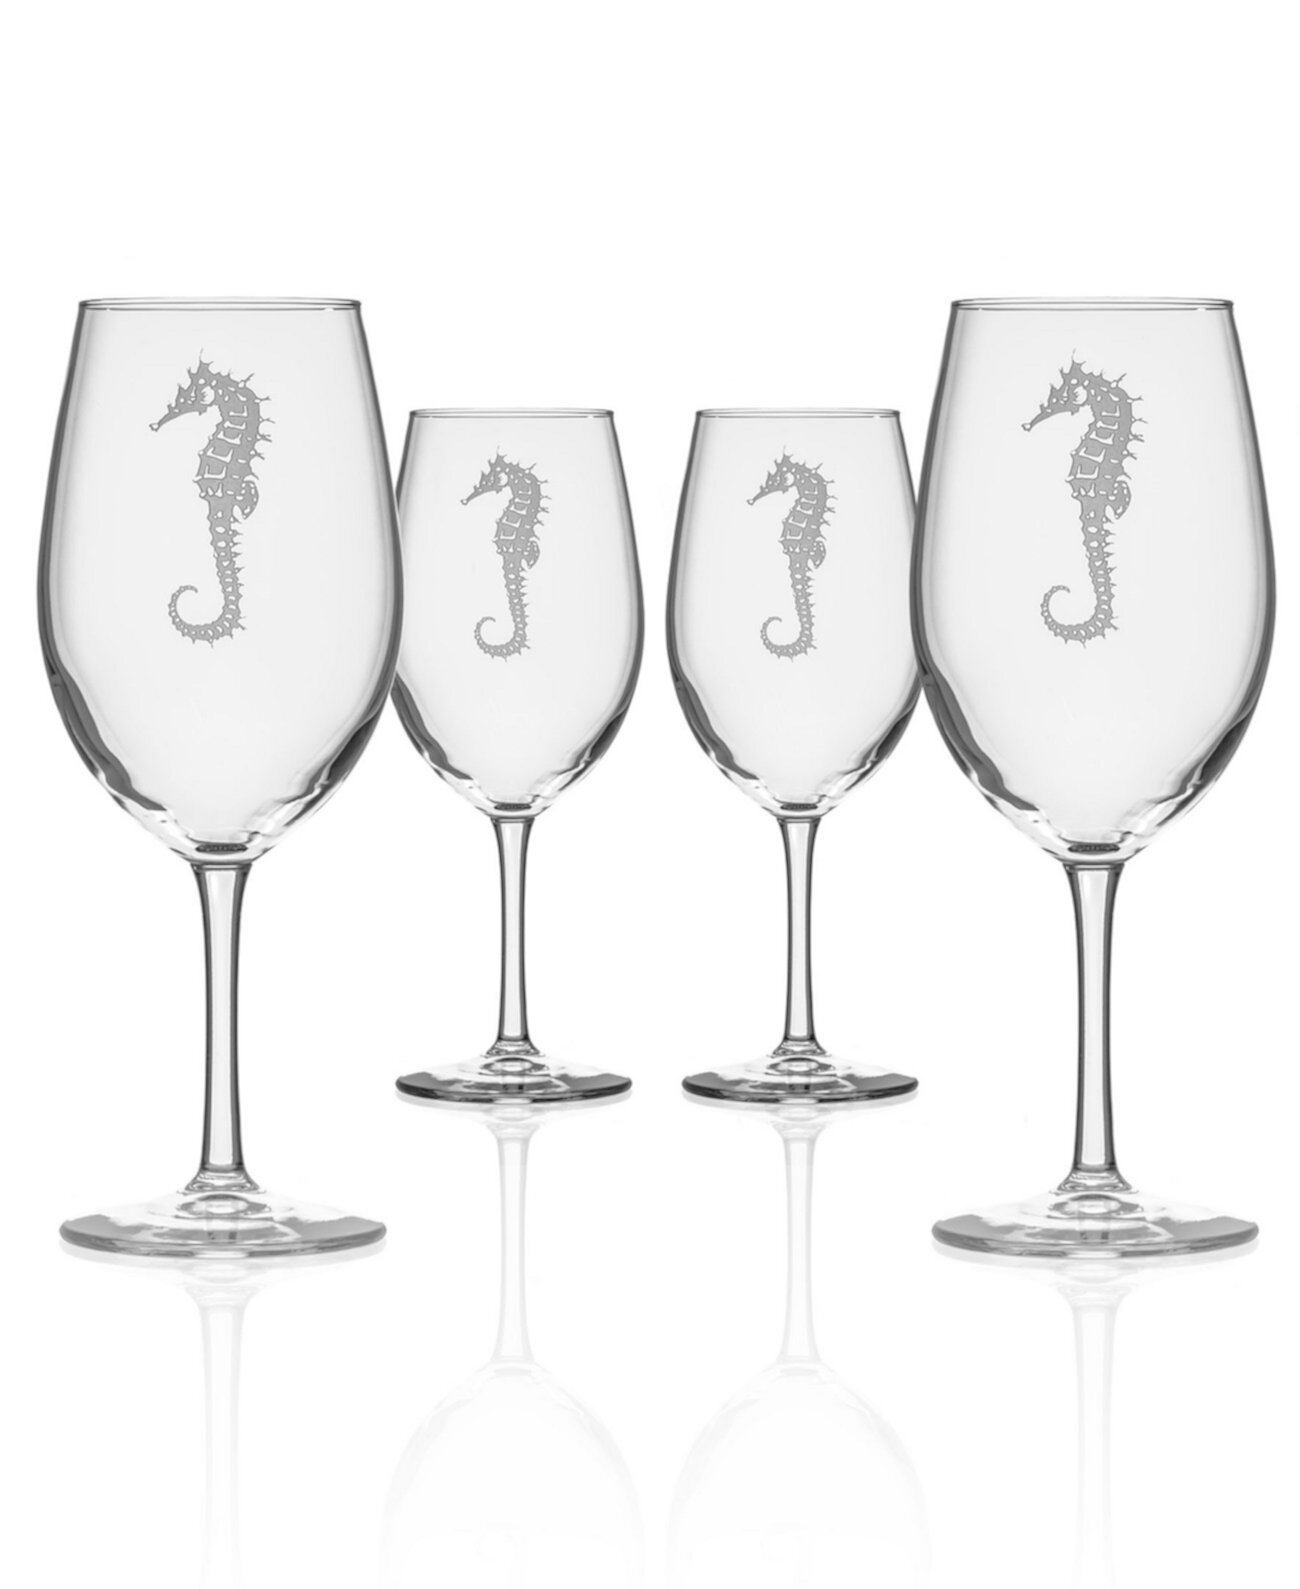 Универсальный бокал для вина Seahorse 18 унций - набор из 4 бокалов Rolf Glass